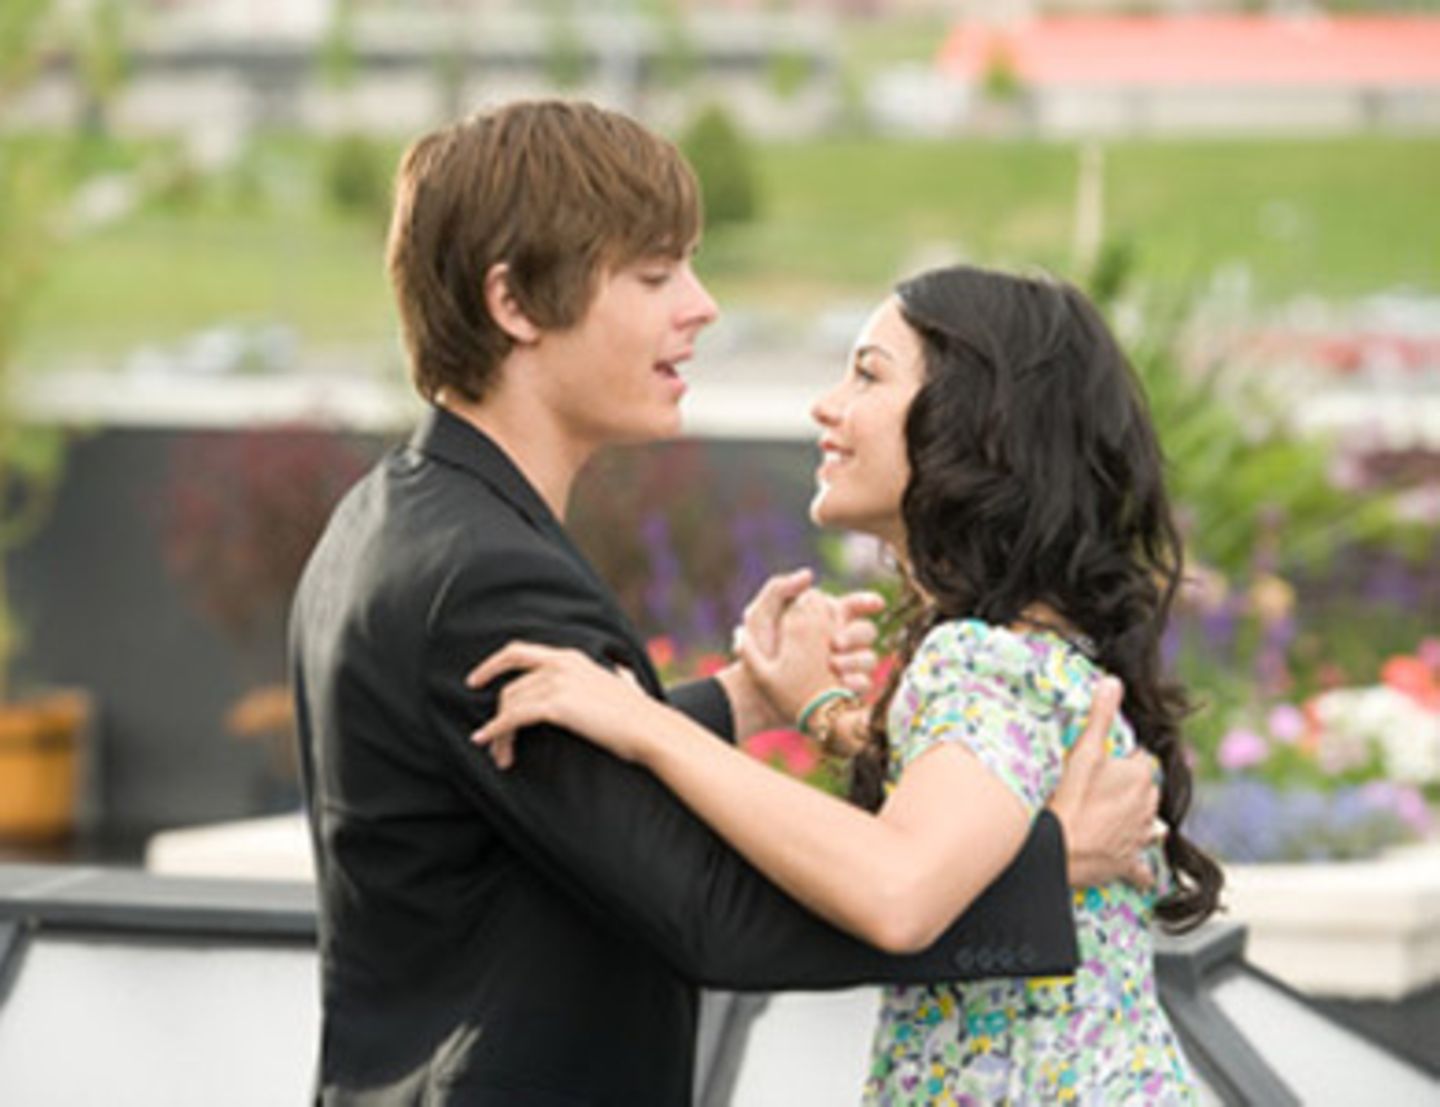 Tanzend und singend ins Glück: Troy und Gabriella in "High School Musical 3".